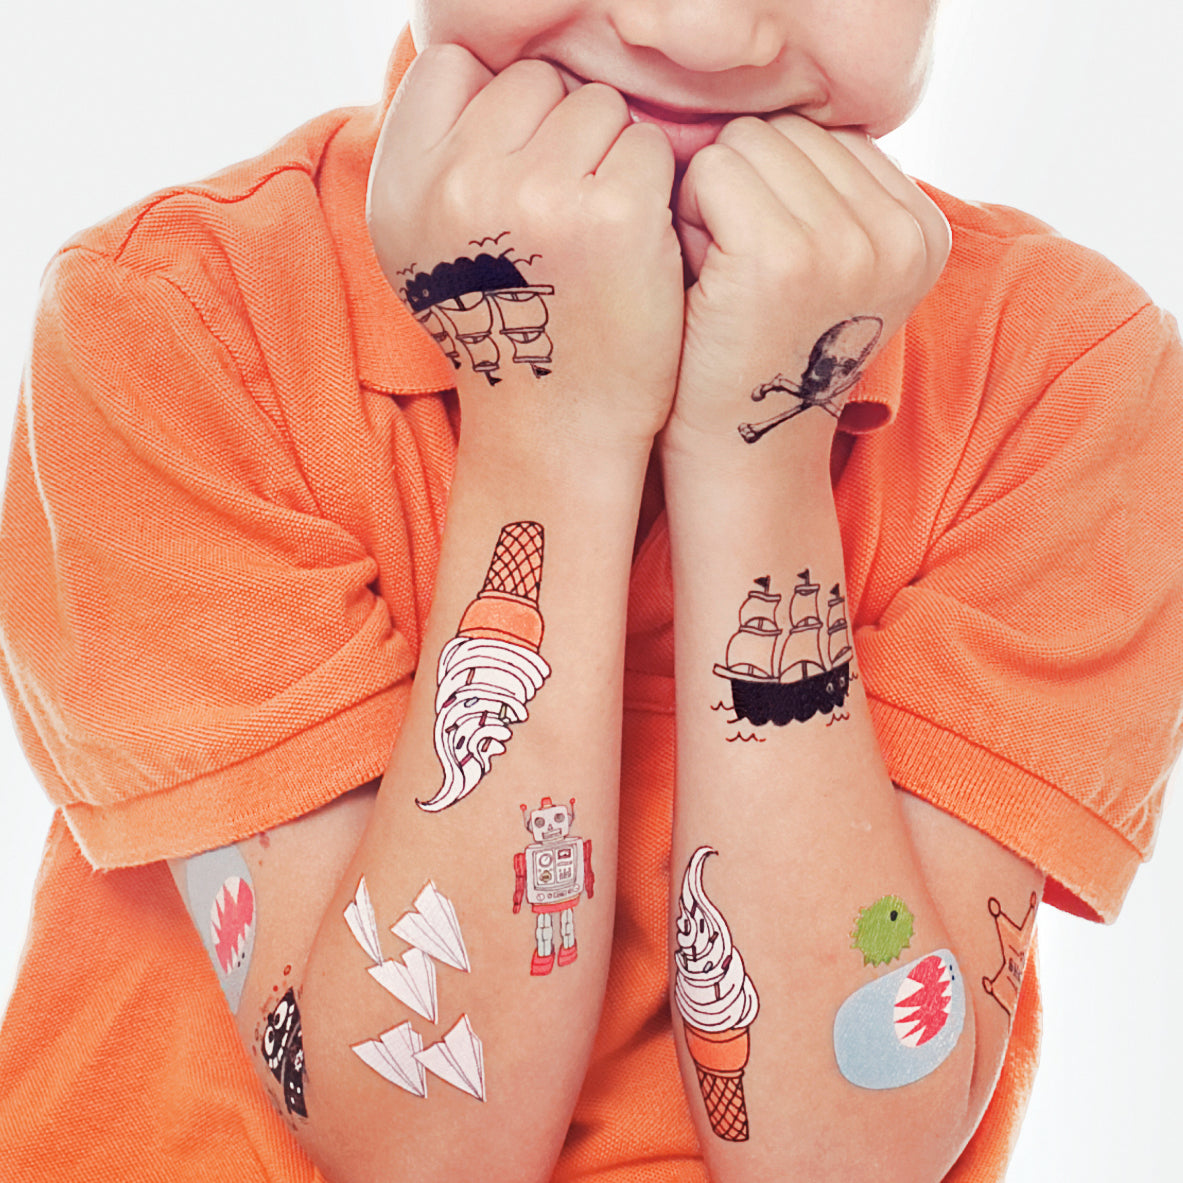 Pin by stay on Tattoo's  Cute tattoos, Tattoo flash art, Tattoo drawings